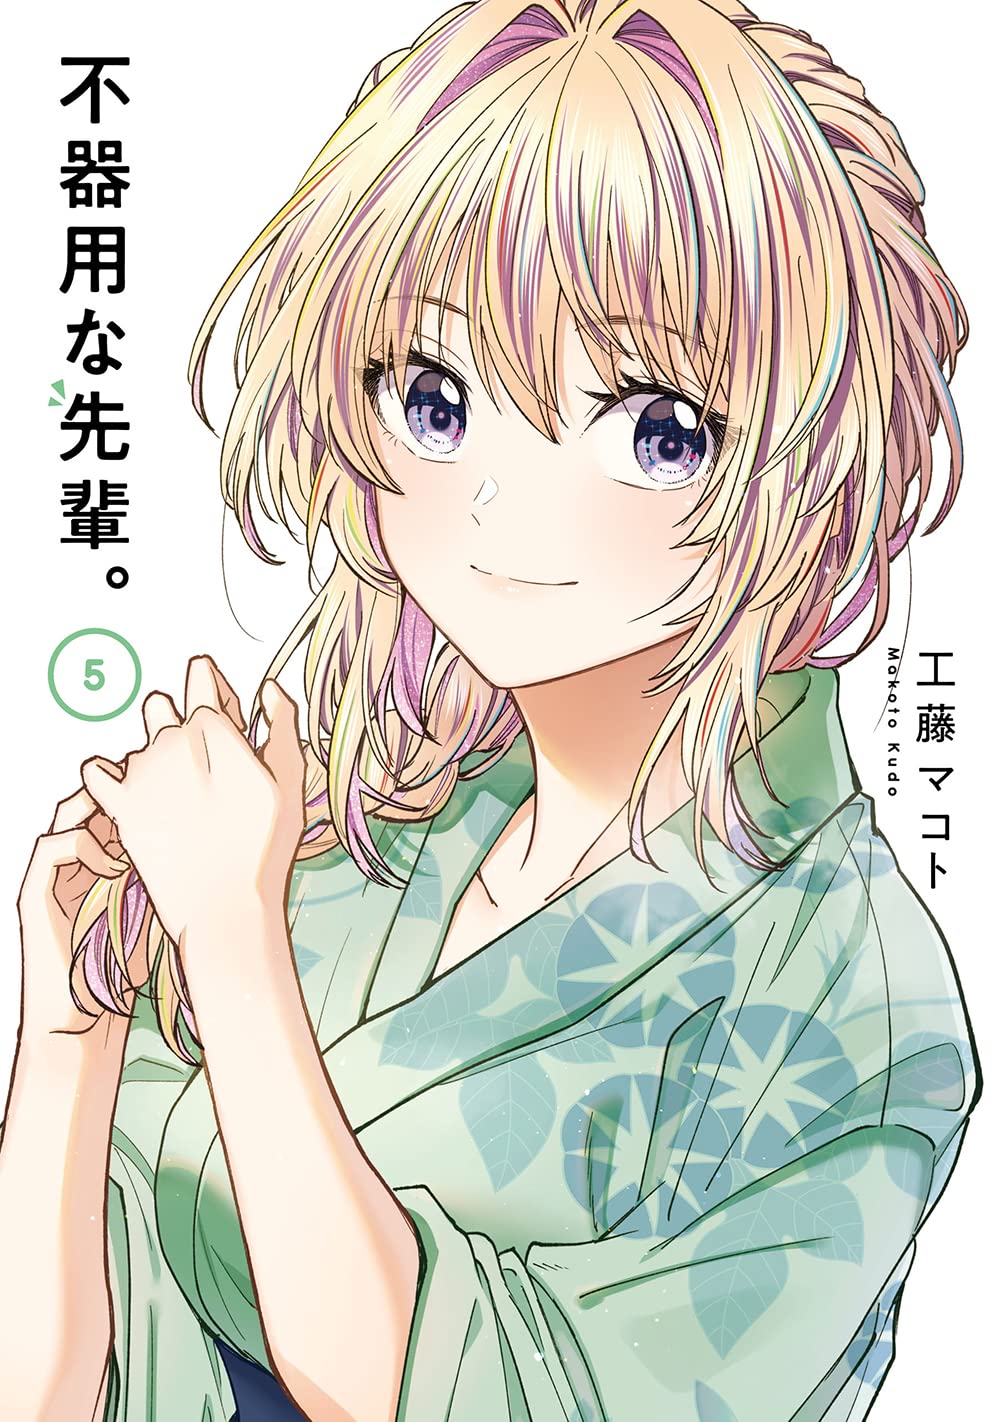 Volume 22 de Seirei Gensouki figura entre mais vendidos de Agosto